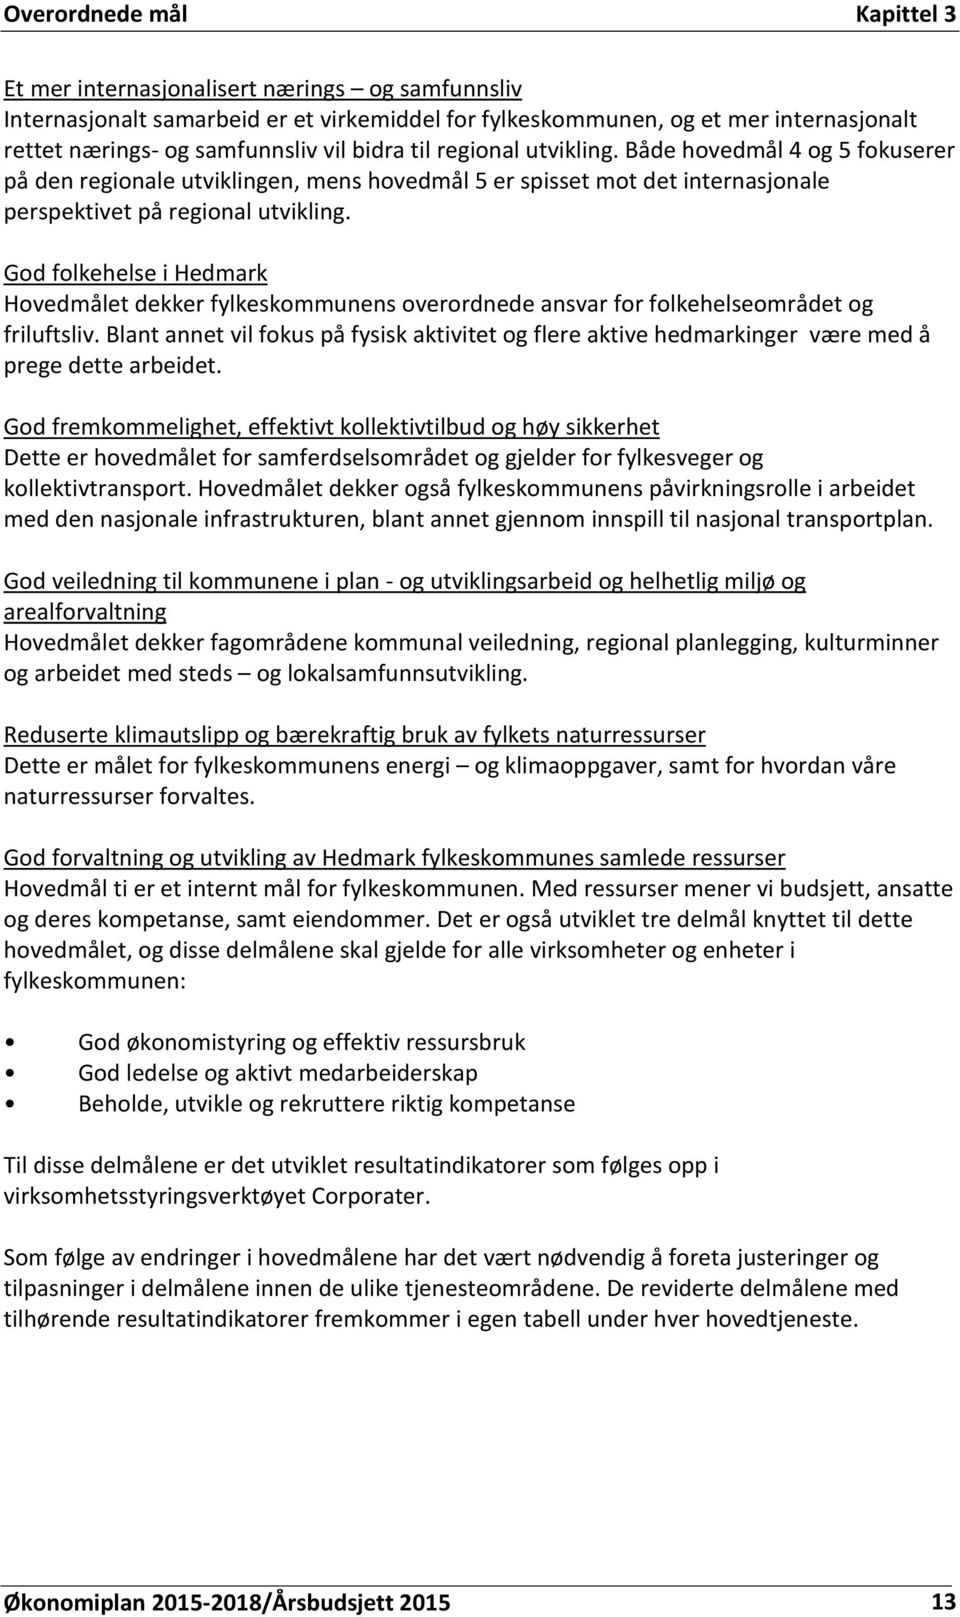 God folkehelse i Hedmark Hovedmålet dekker fylkeskommunens overordnede ansvar for folkehelseområdet og friluftsliv.